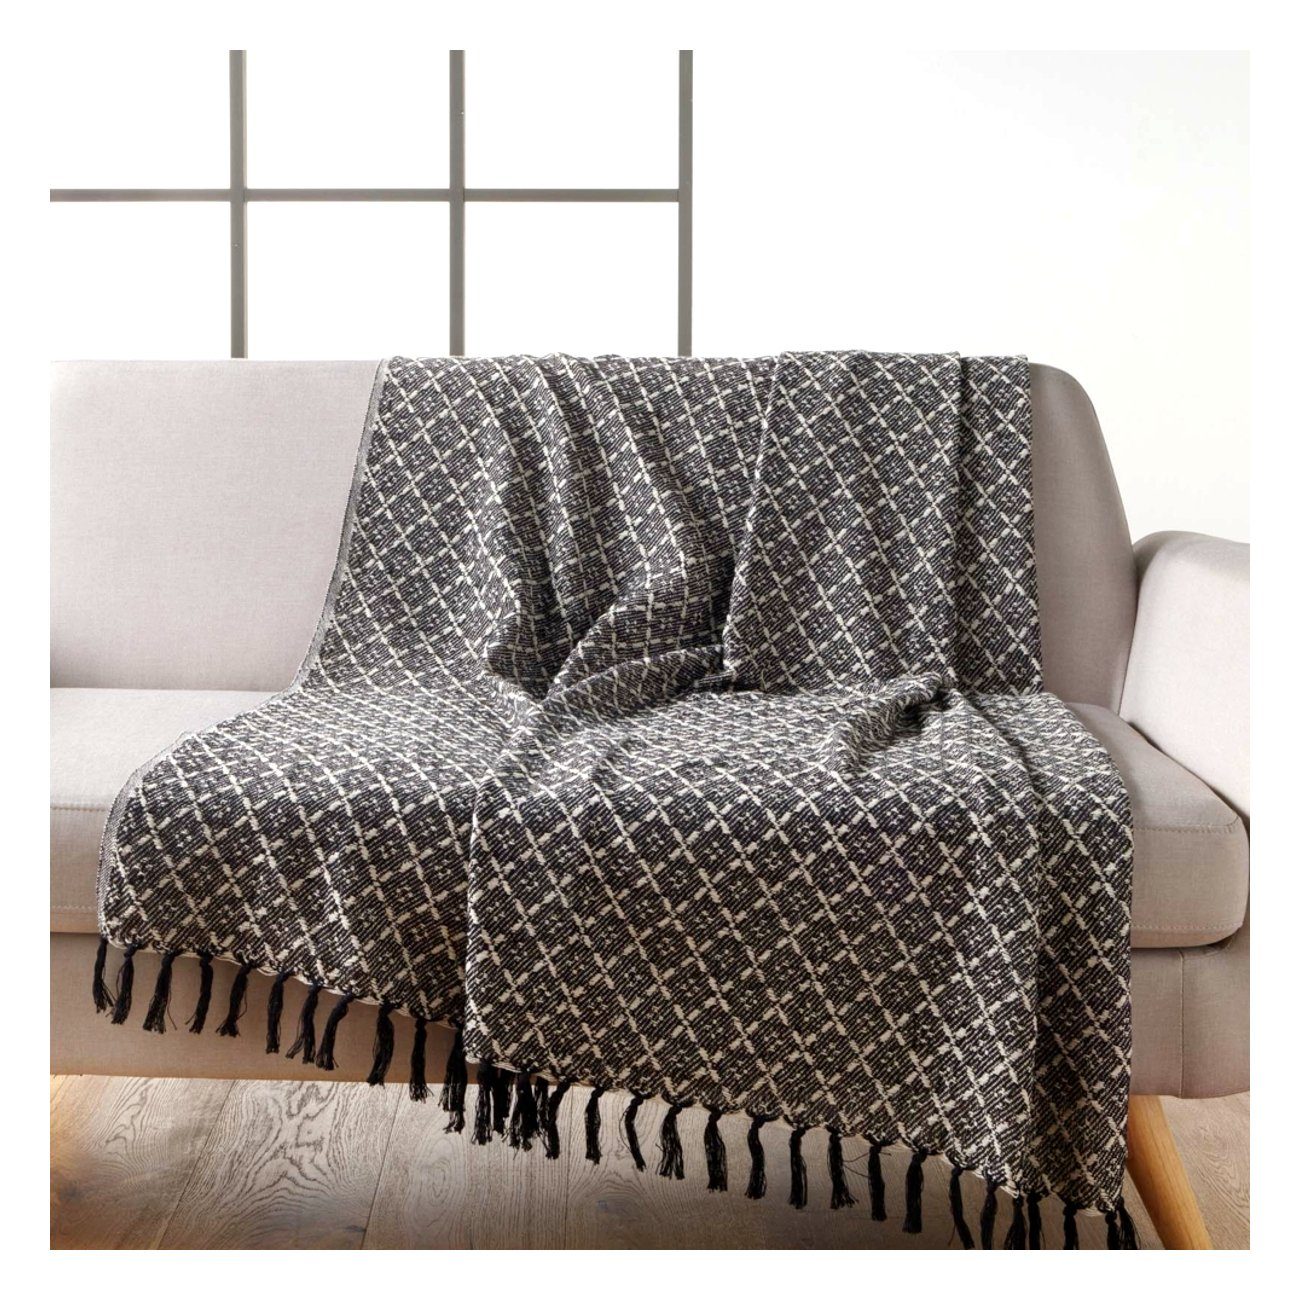 Plaid schwarz Sofadecke Macosa 150x125 weiß Fransen-Decke cm Reisedecke Baumwolle, Wolldecke Plaid Designdecke Home,